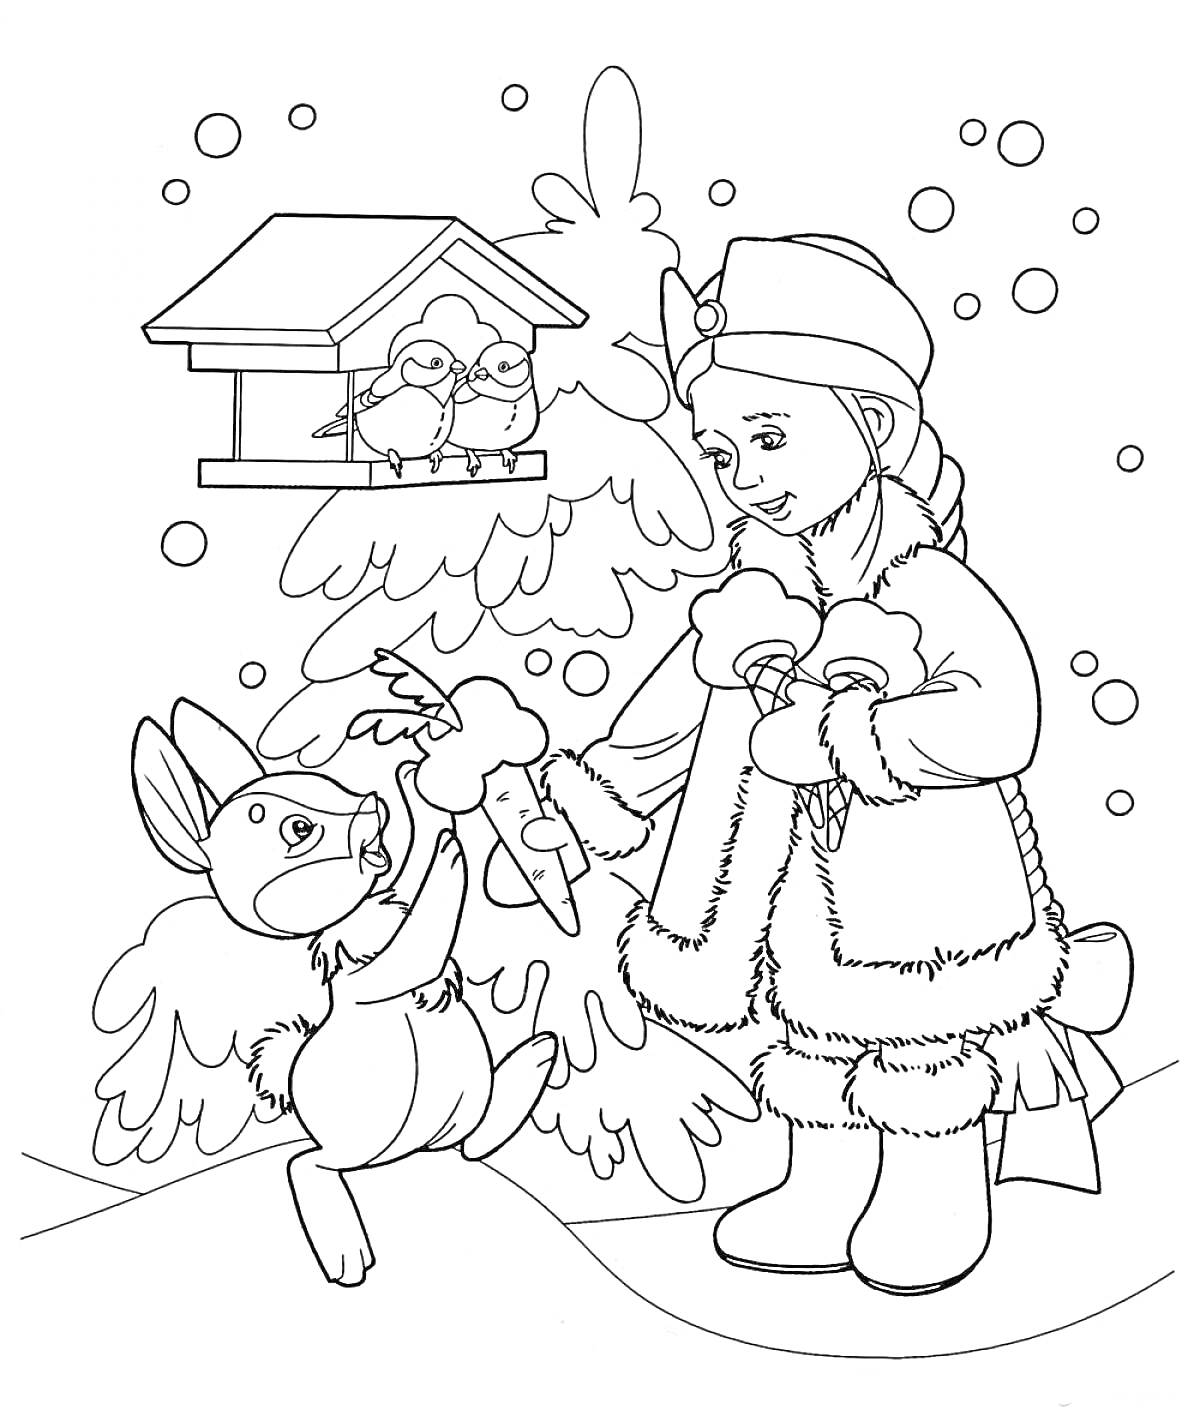 Раскраска Снегурочка с зайчиком у кормушки под ёлкой